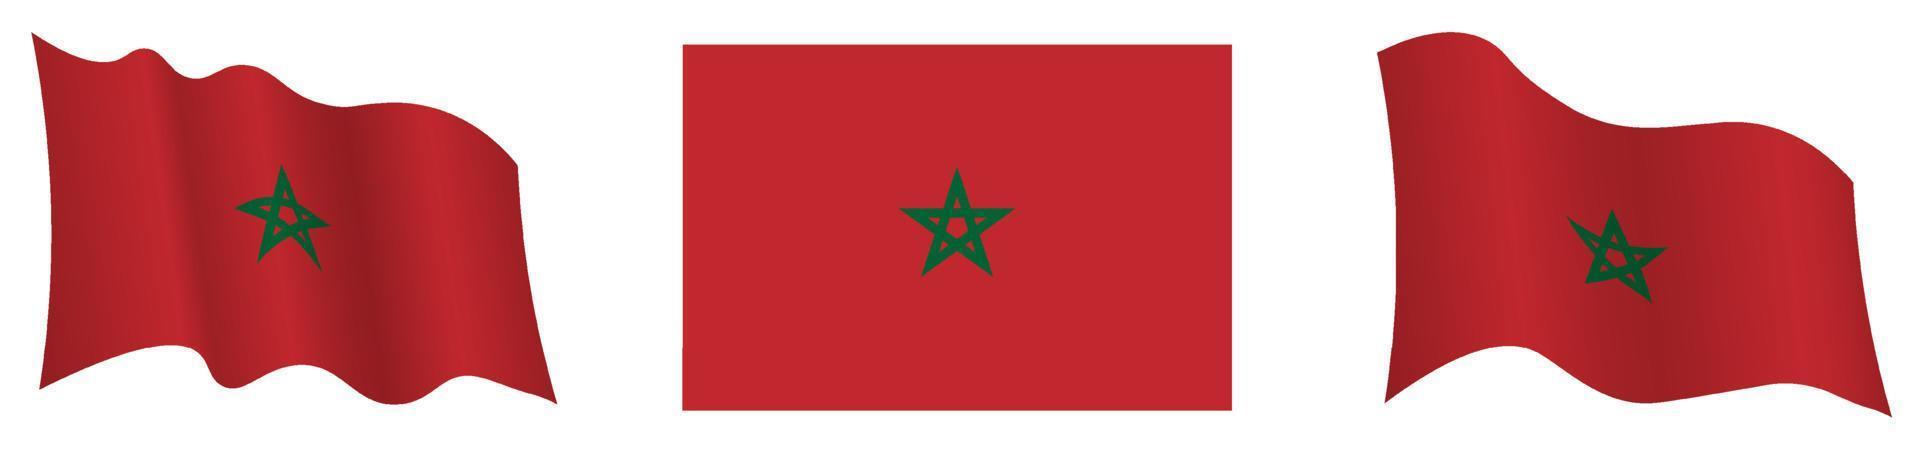 marokko flagge in statischer position und in bewegung, flatternd im wind in genauen farben und größen, auf weißem hintergrund vektor